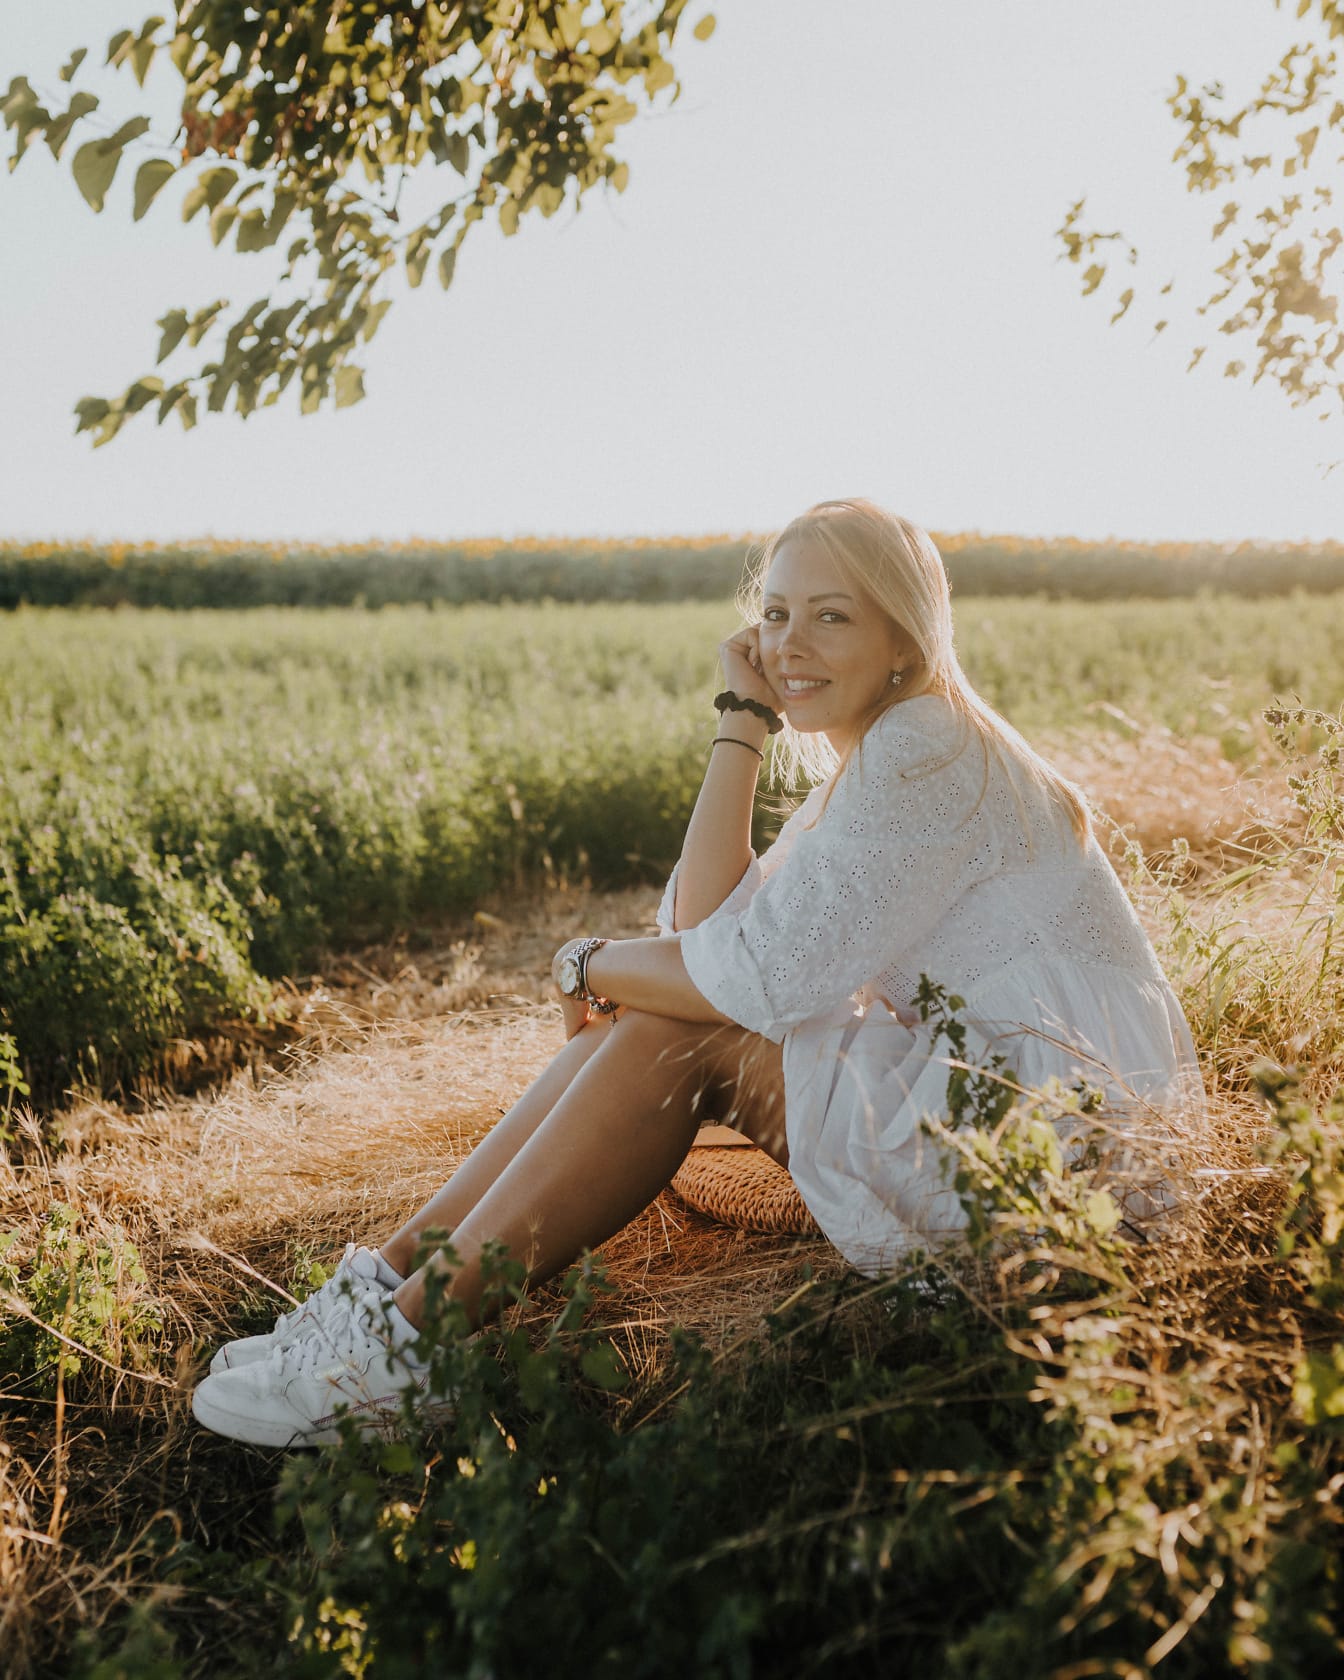 화창한 여름날 들판에 앉아 있는 아름 다운 미소 짓는 시골 젊은 여자